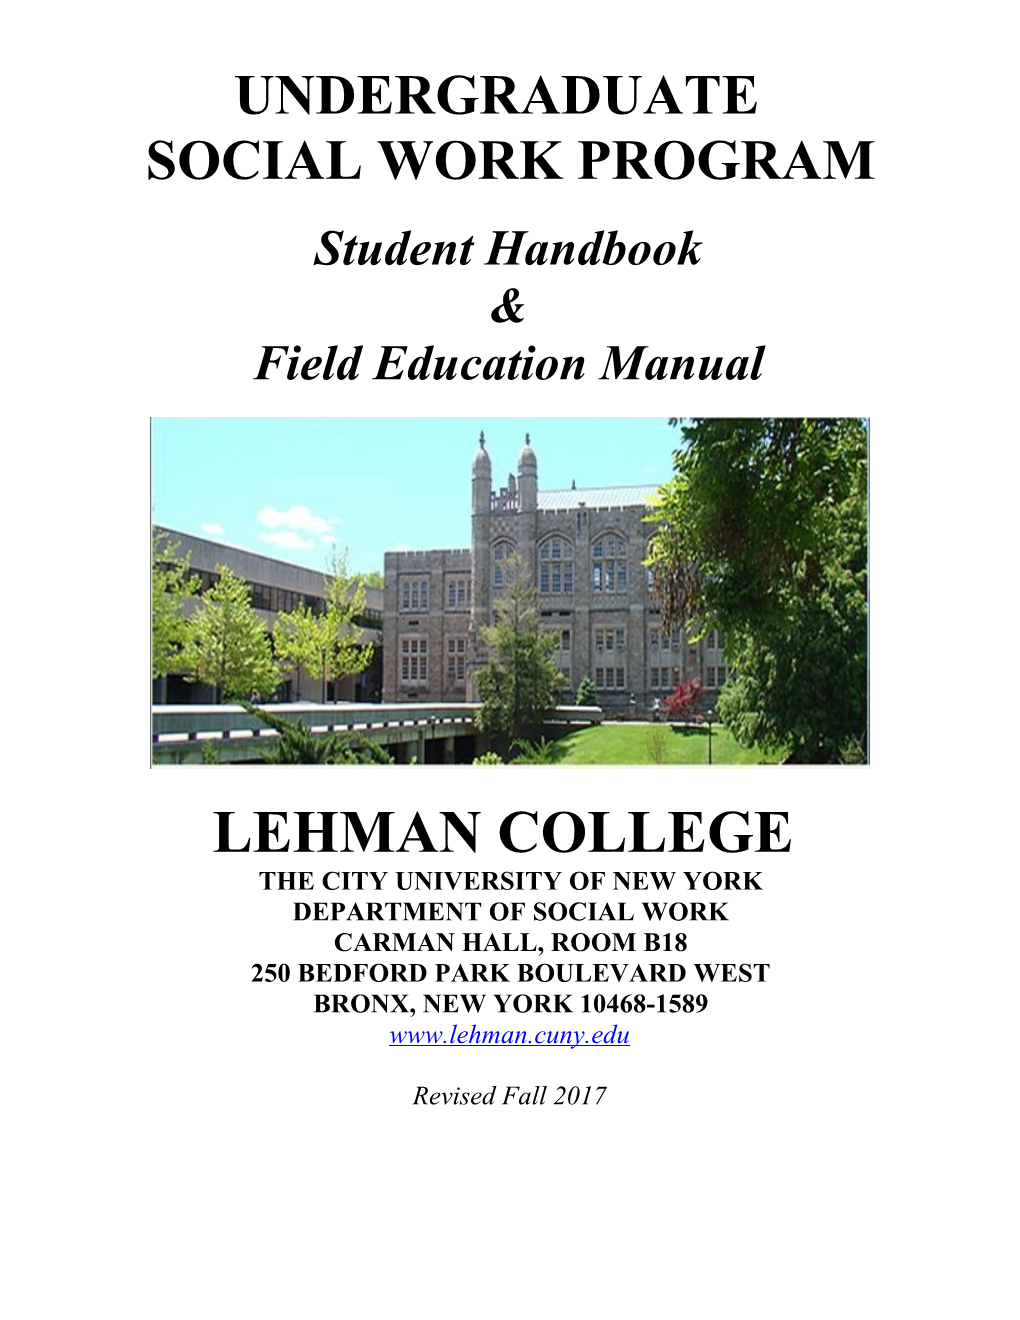 Social Work Program